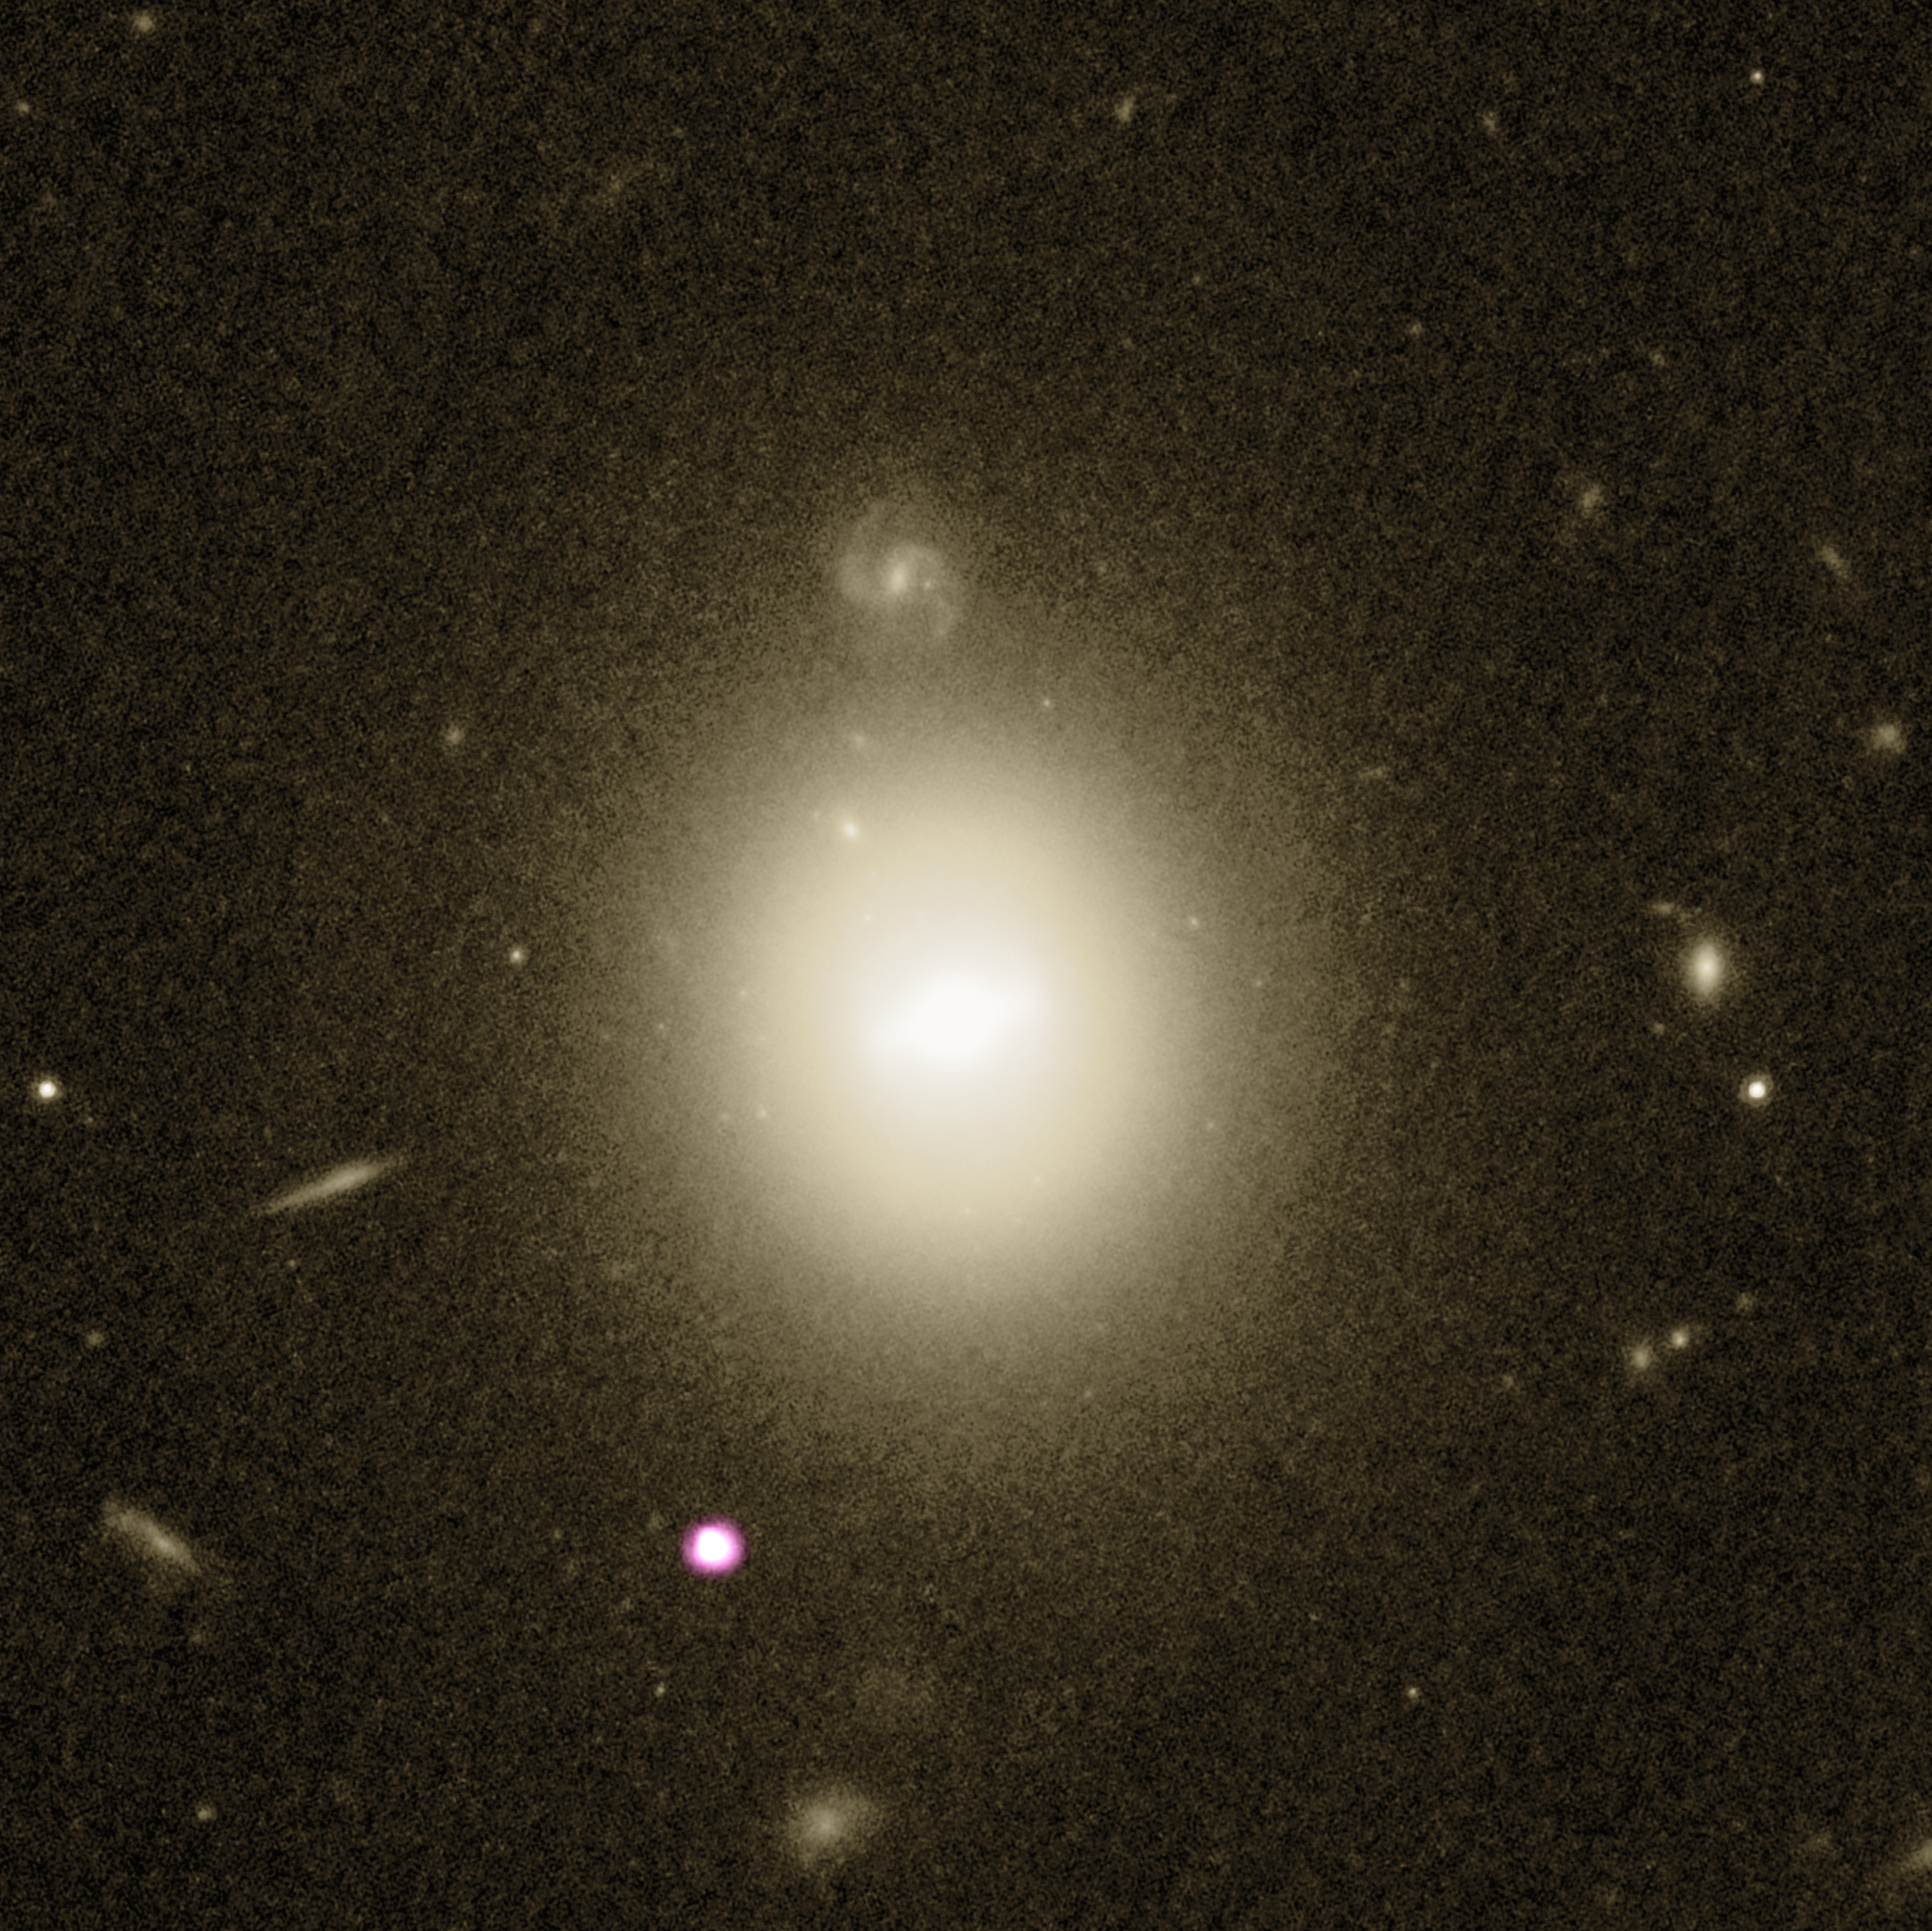 Es wird angenommen, dass Galaxy 6dFGS gJ215022.2-055059 einen der besten derzeit bekannten Kandidaten für Schwarze Löcher mittlerer Masse enthält.